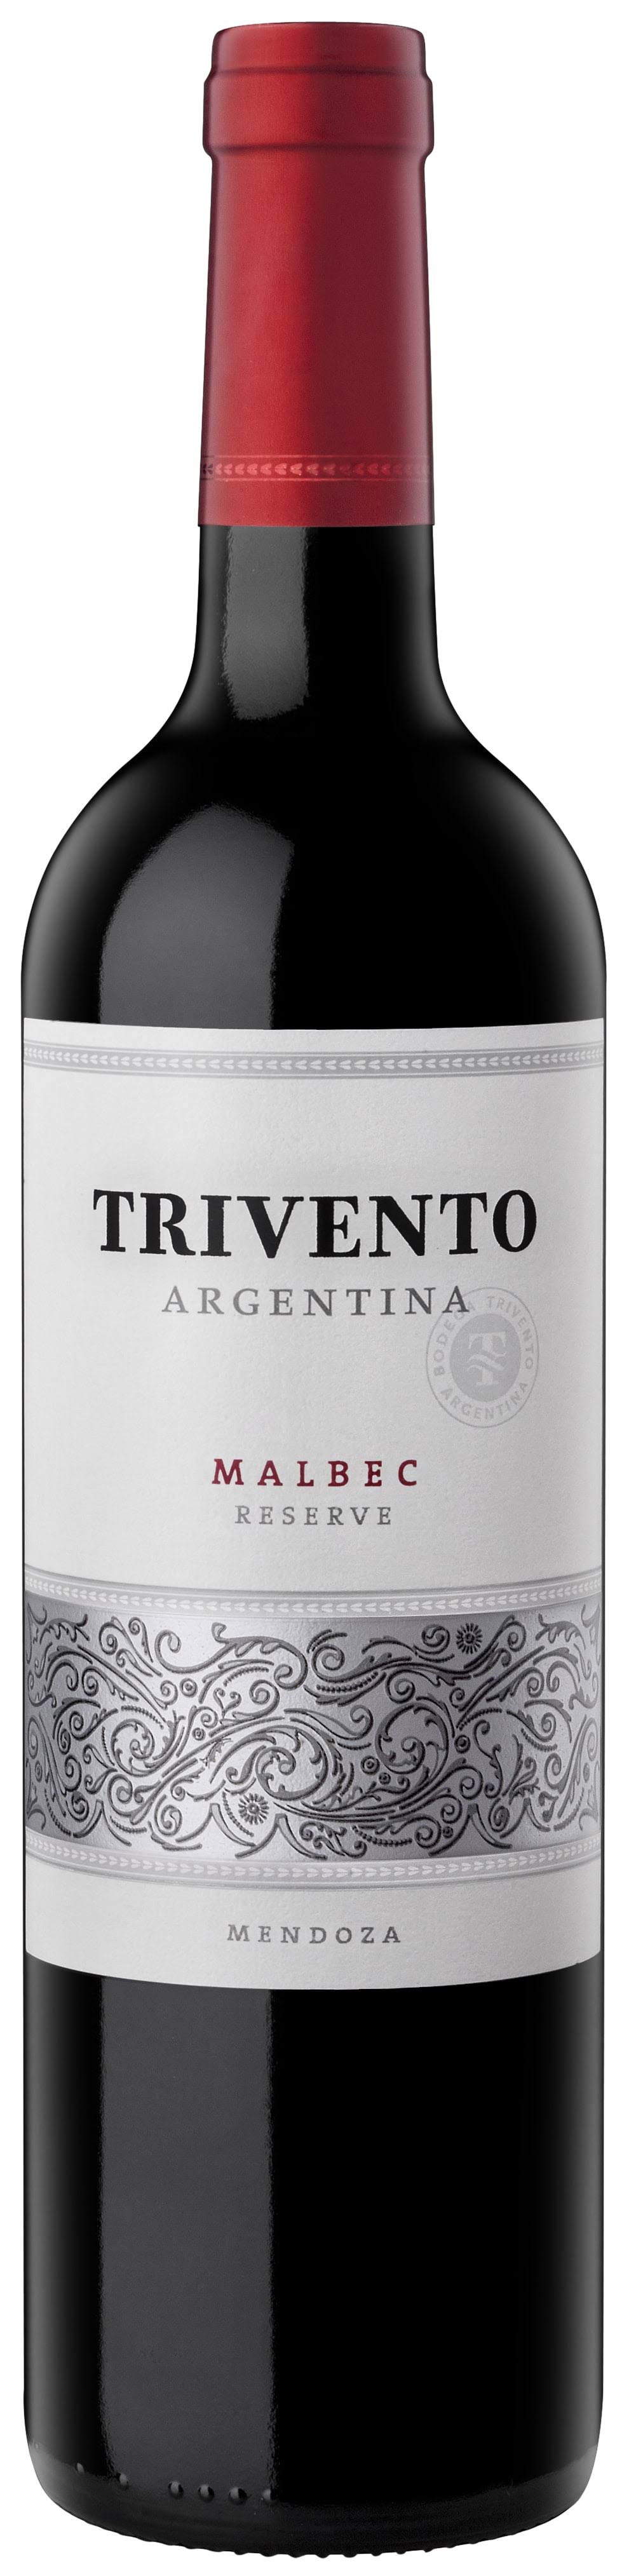 Trivento Malbec, Mendoza - 750 ml